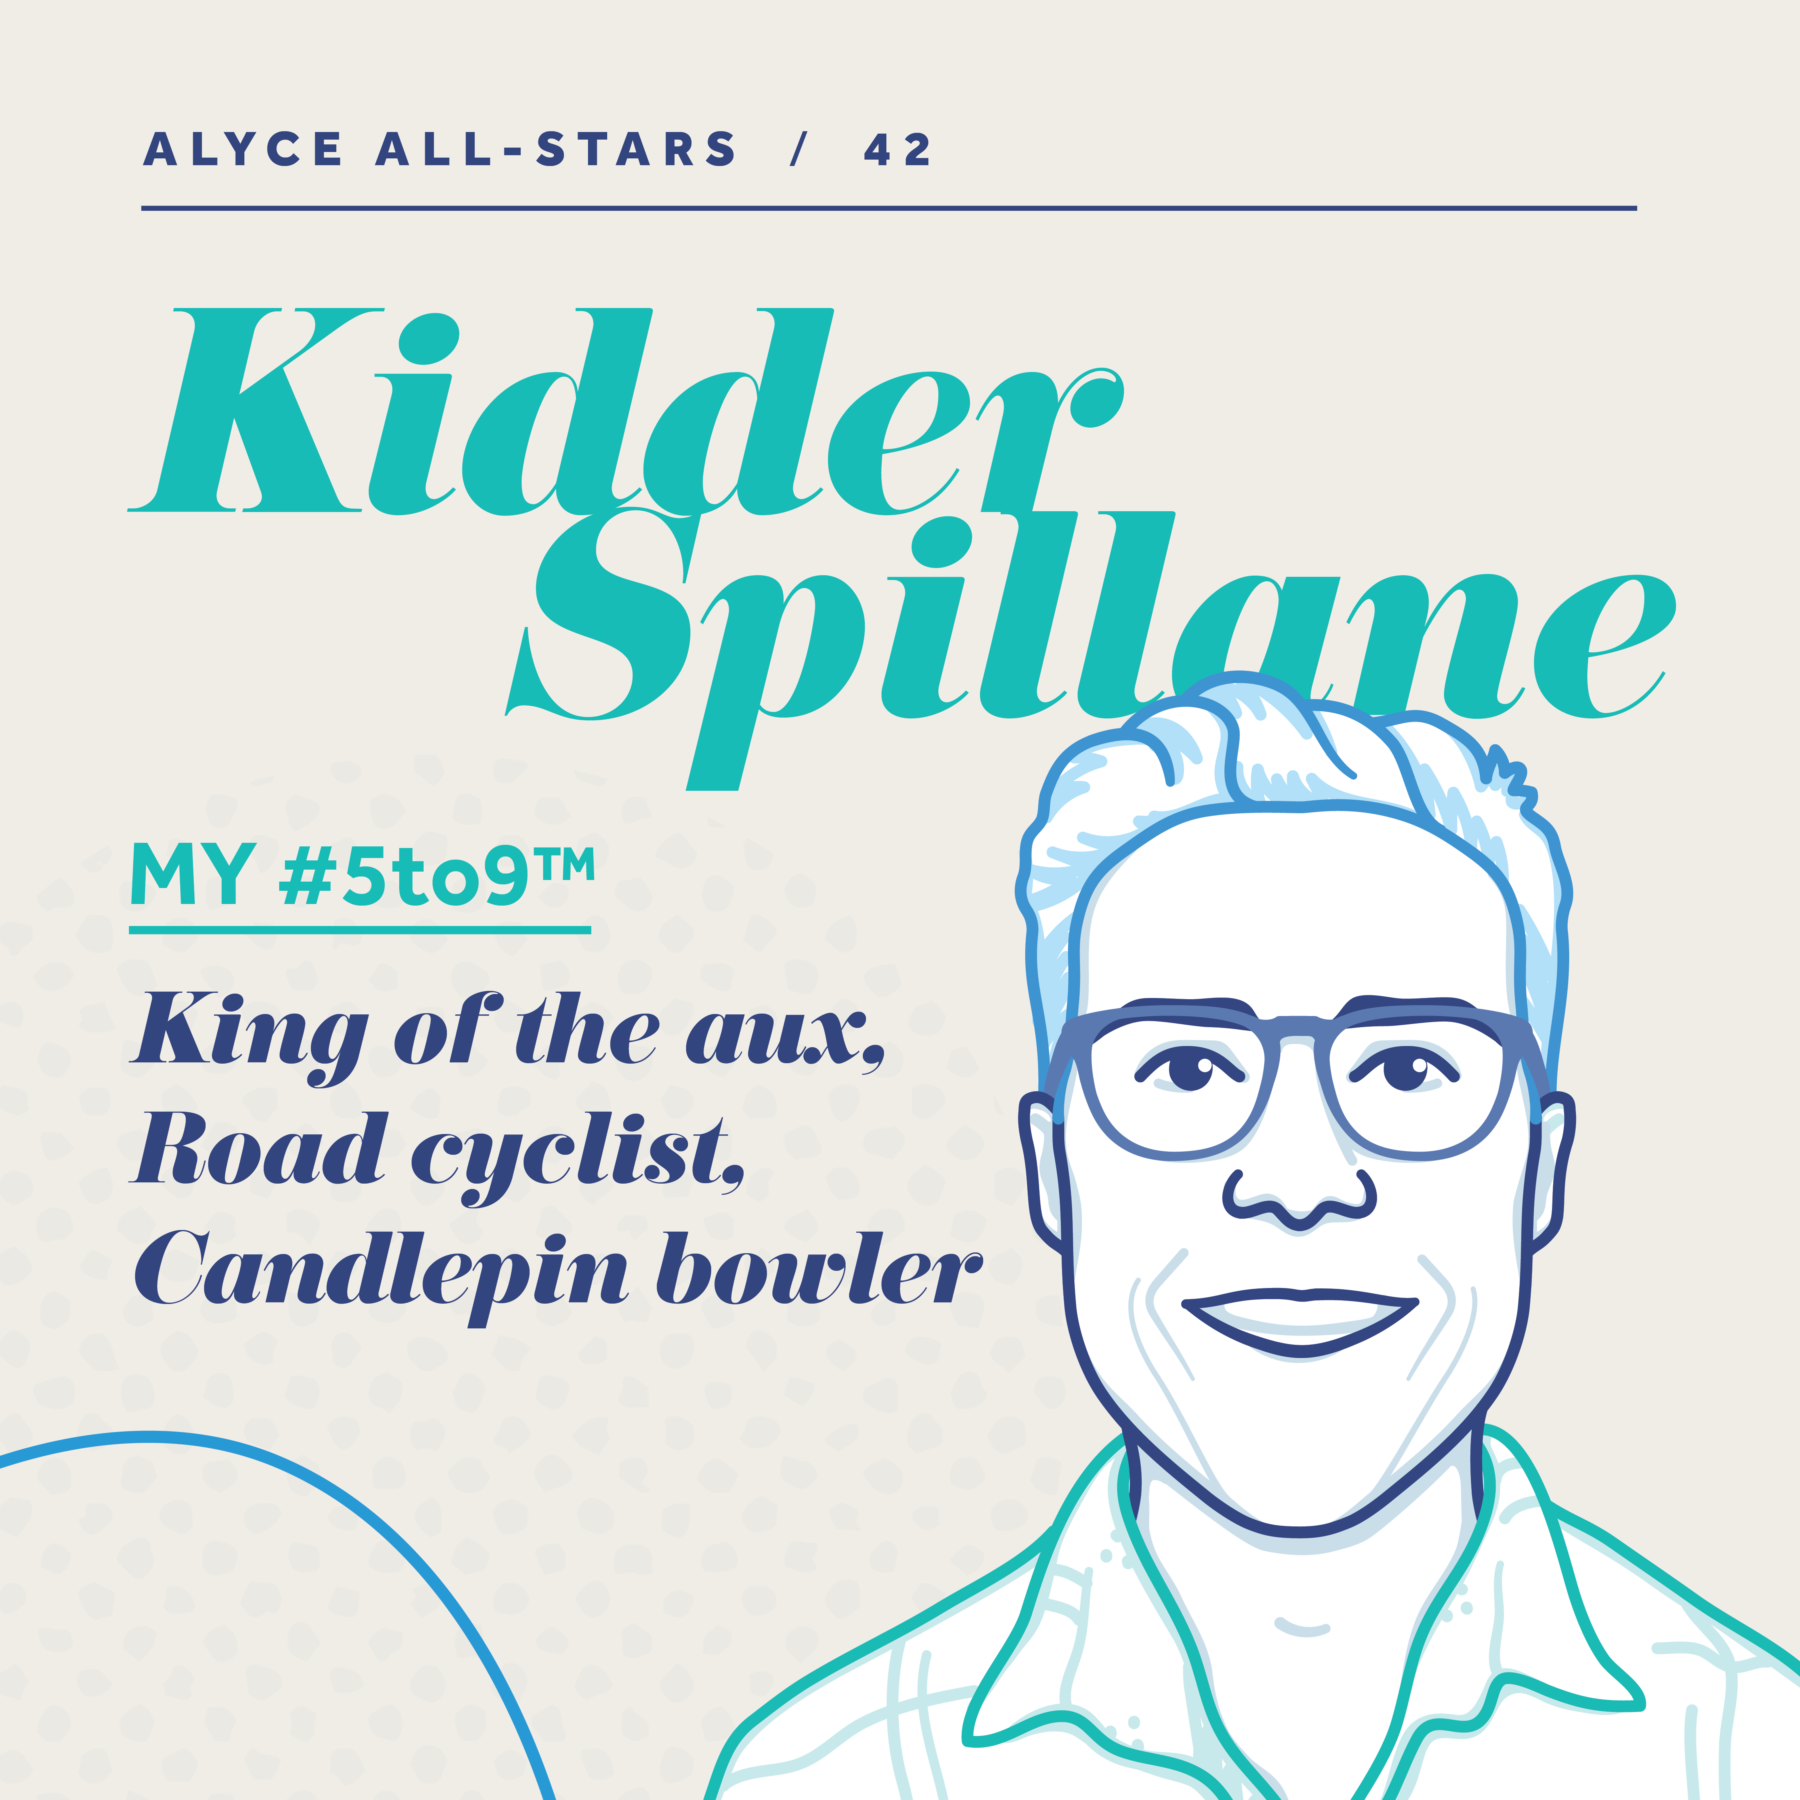 Alyce All-Star Kidder Spillane